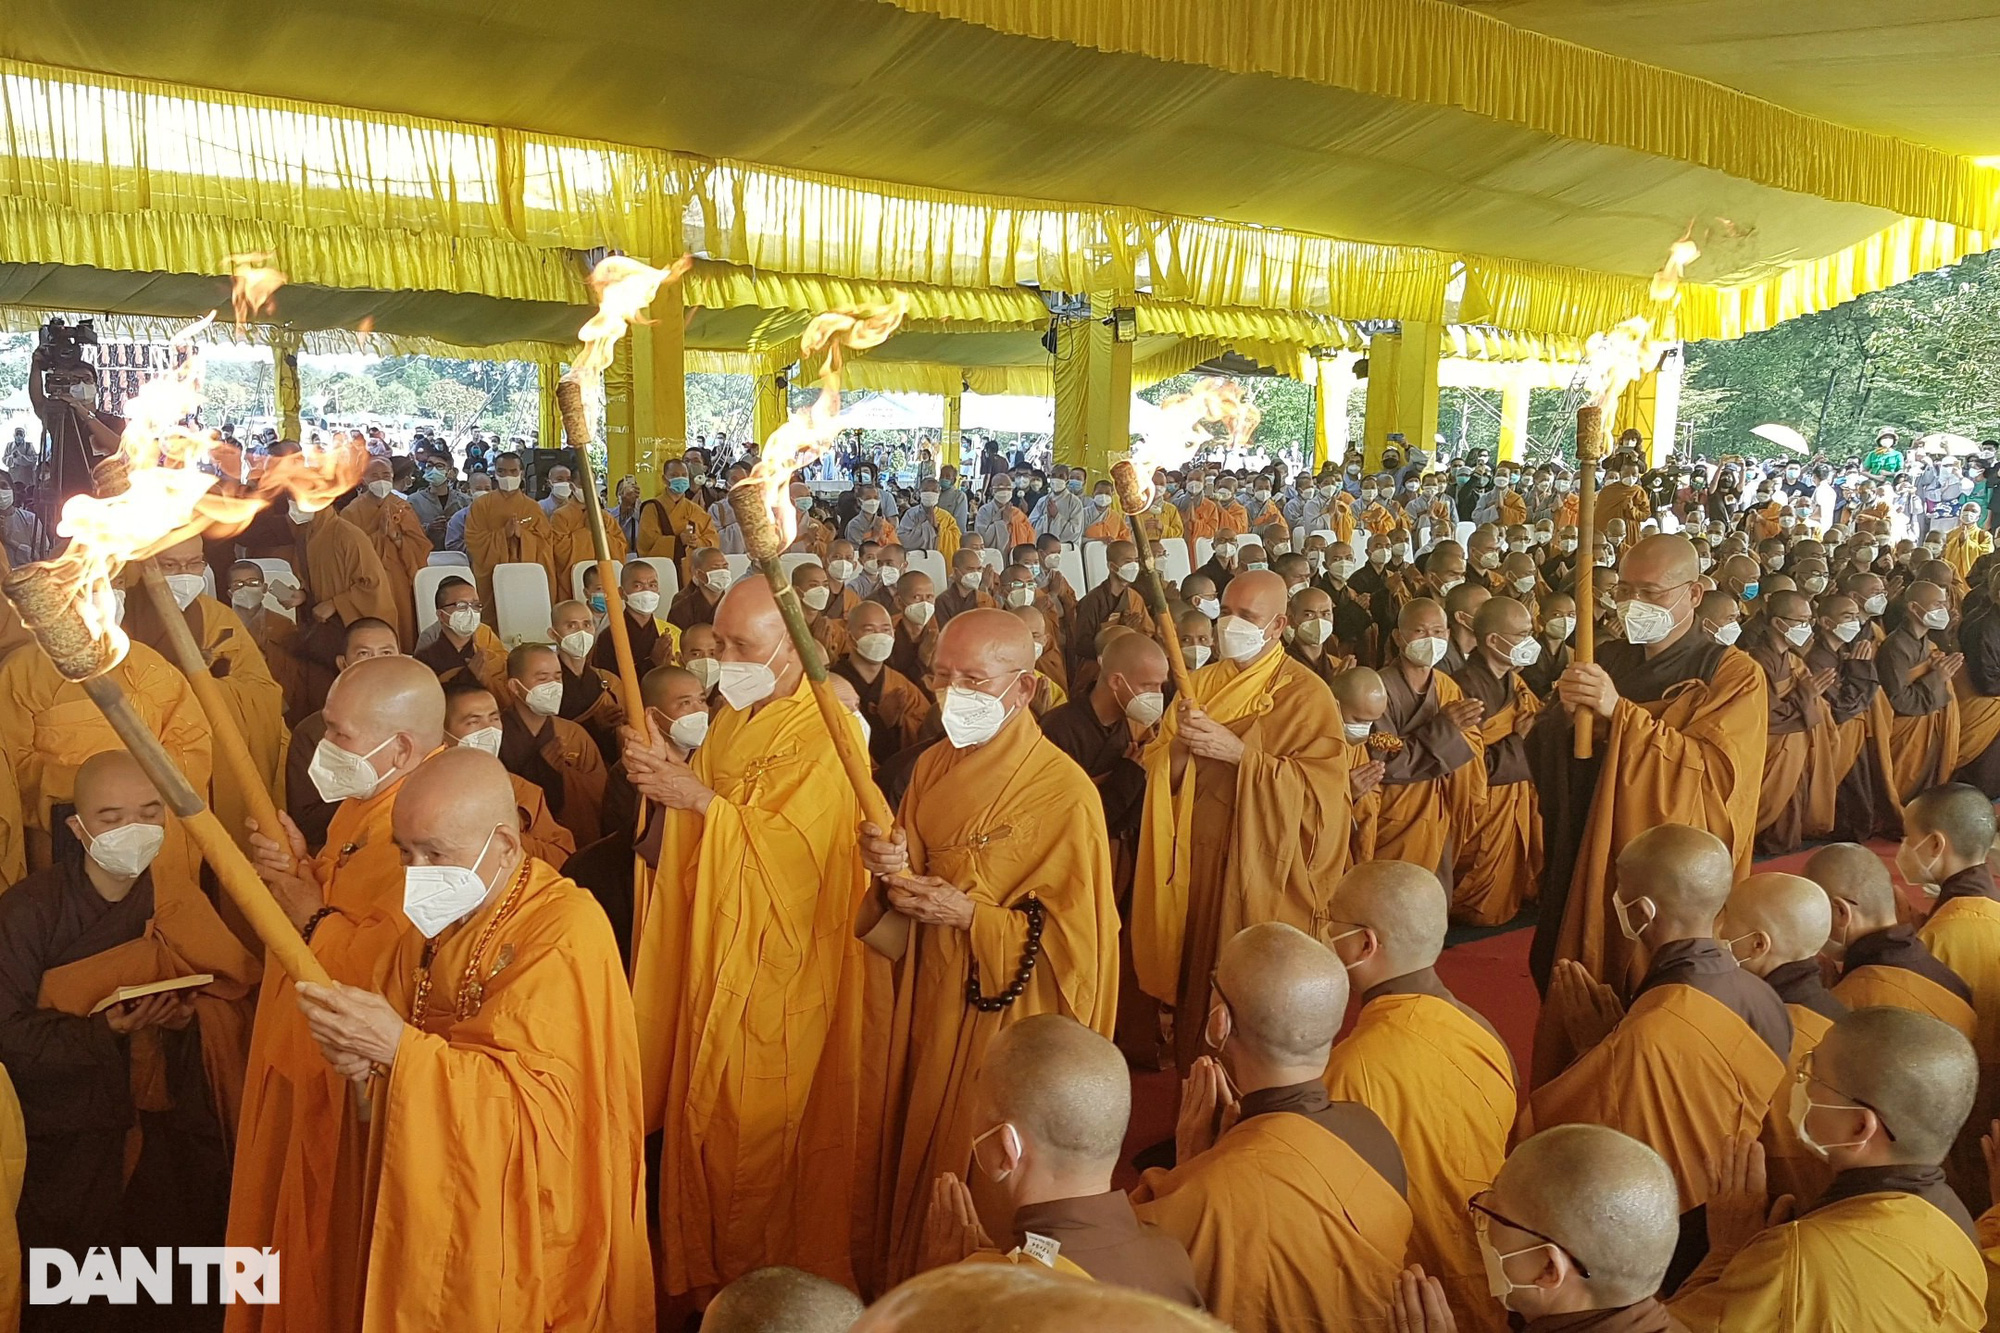 Hàng nghìn người đưa tiễn Thiền sư Thích Nhất Hạnh trong nghi lễ tâm tang - Ảnh 8.